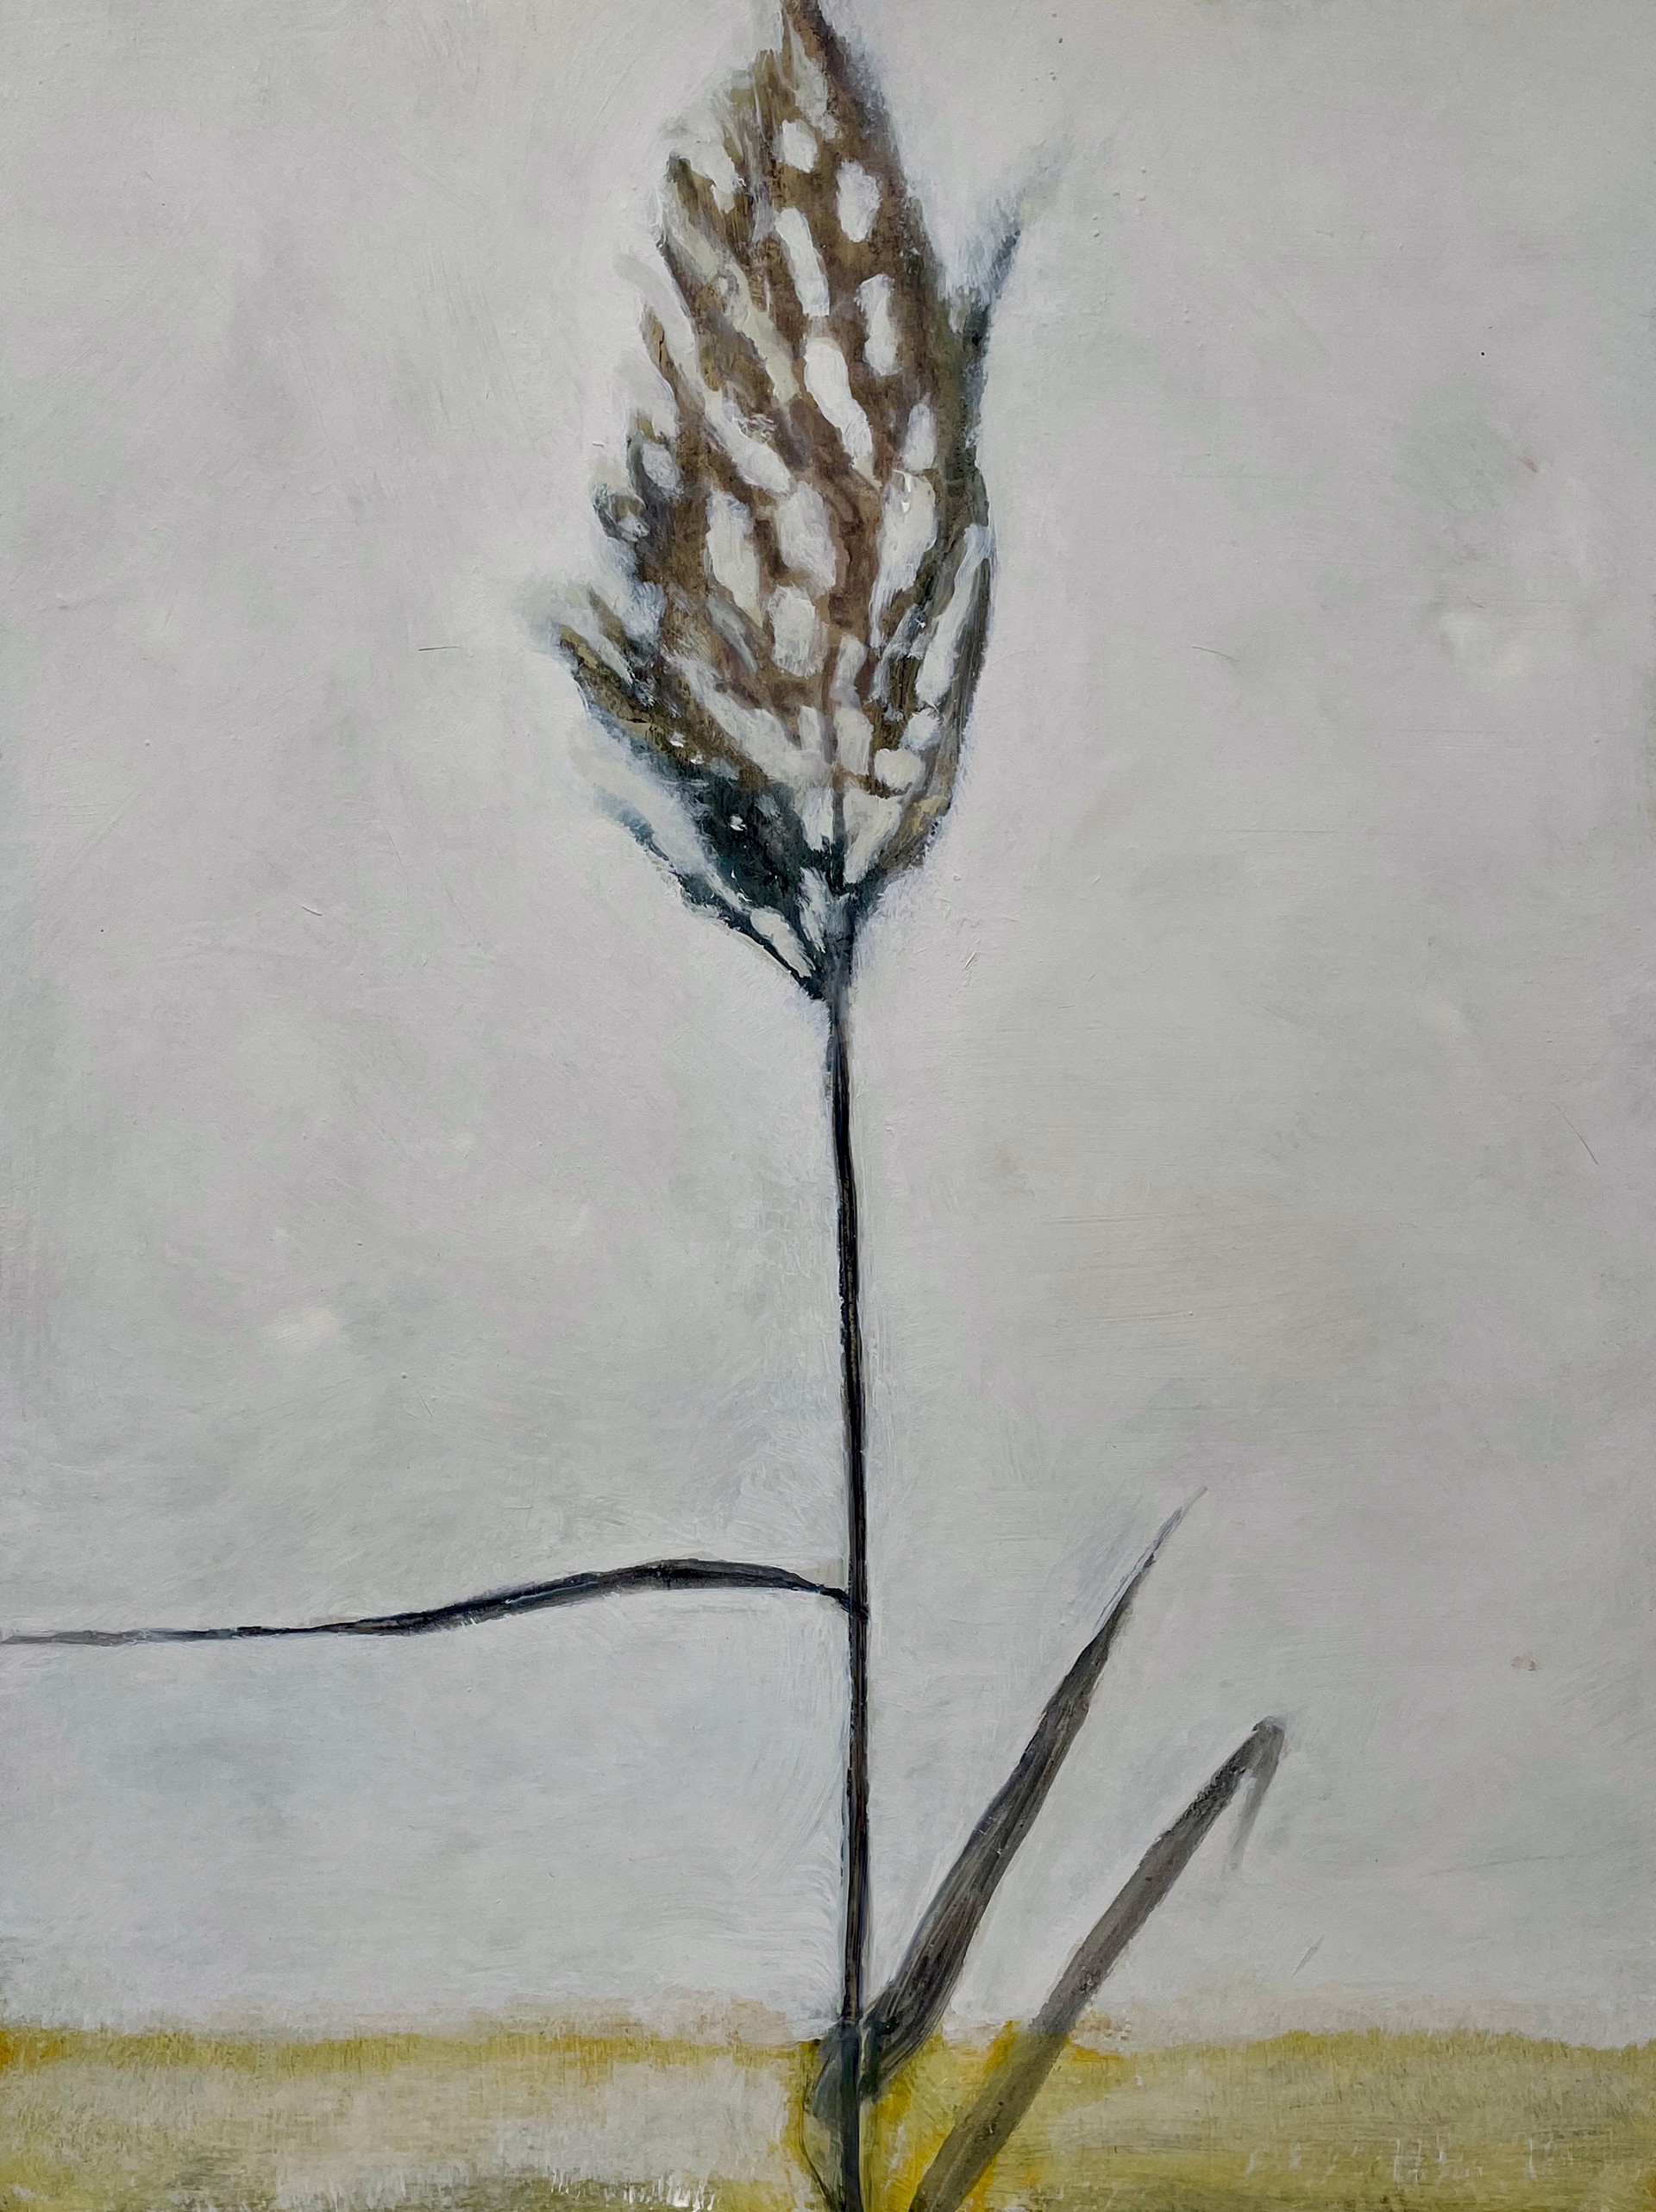 Grasshead by David Konigsberg